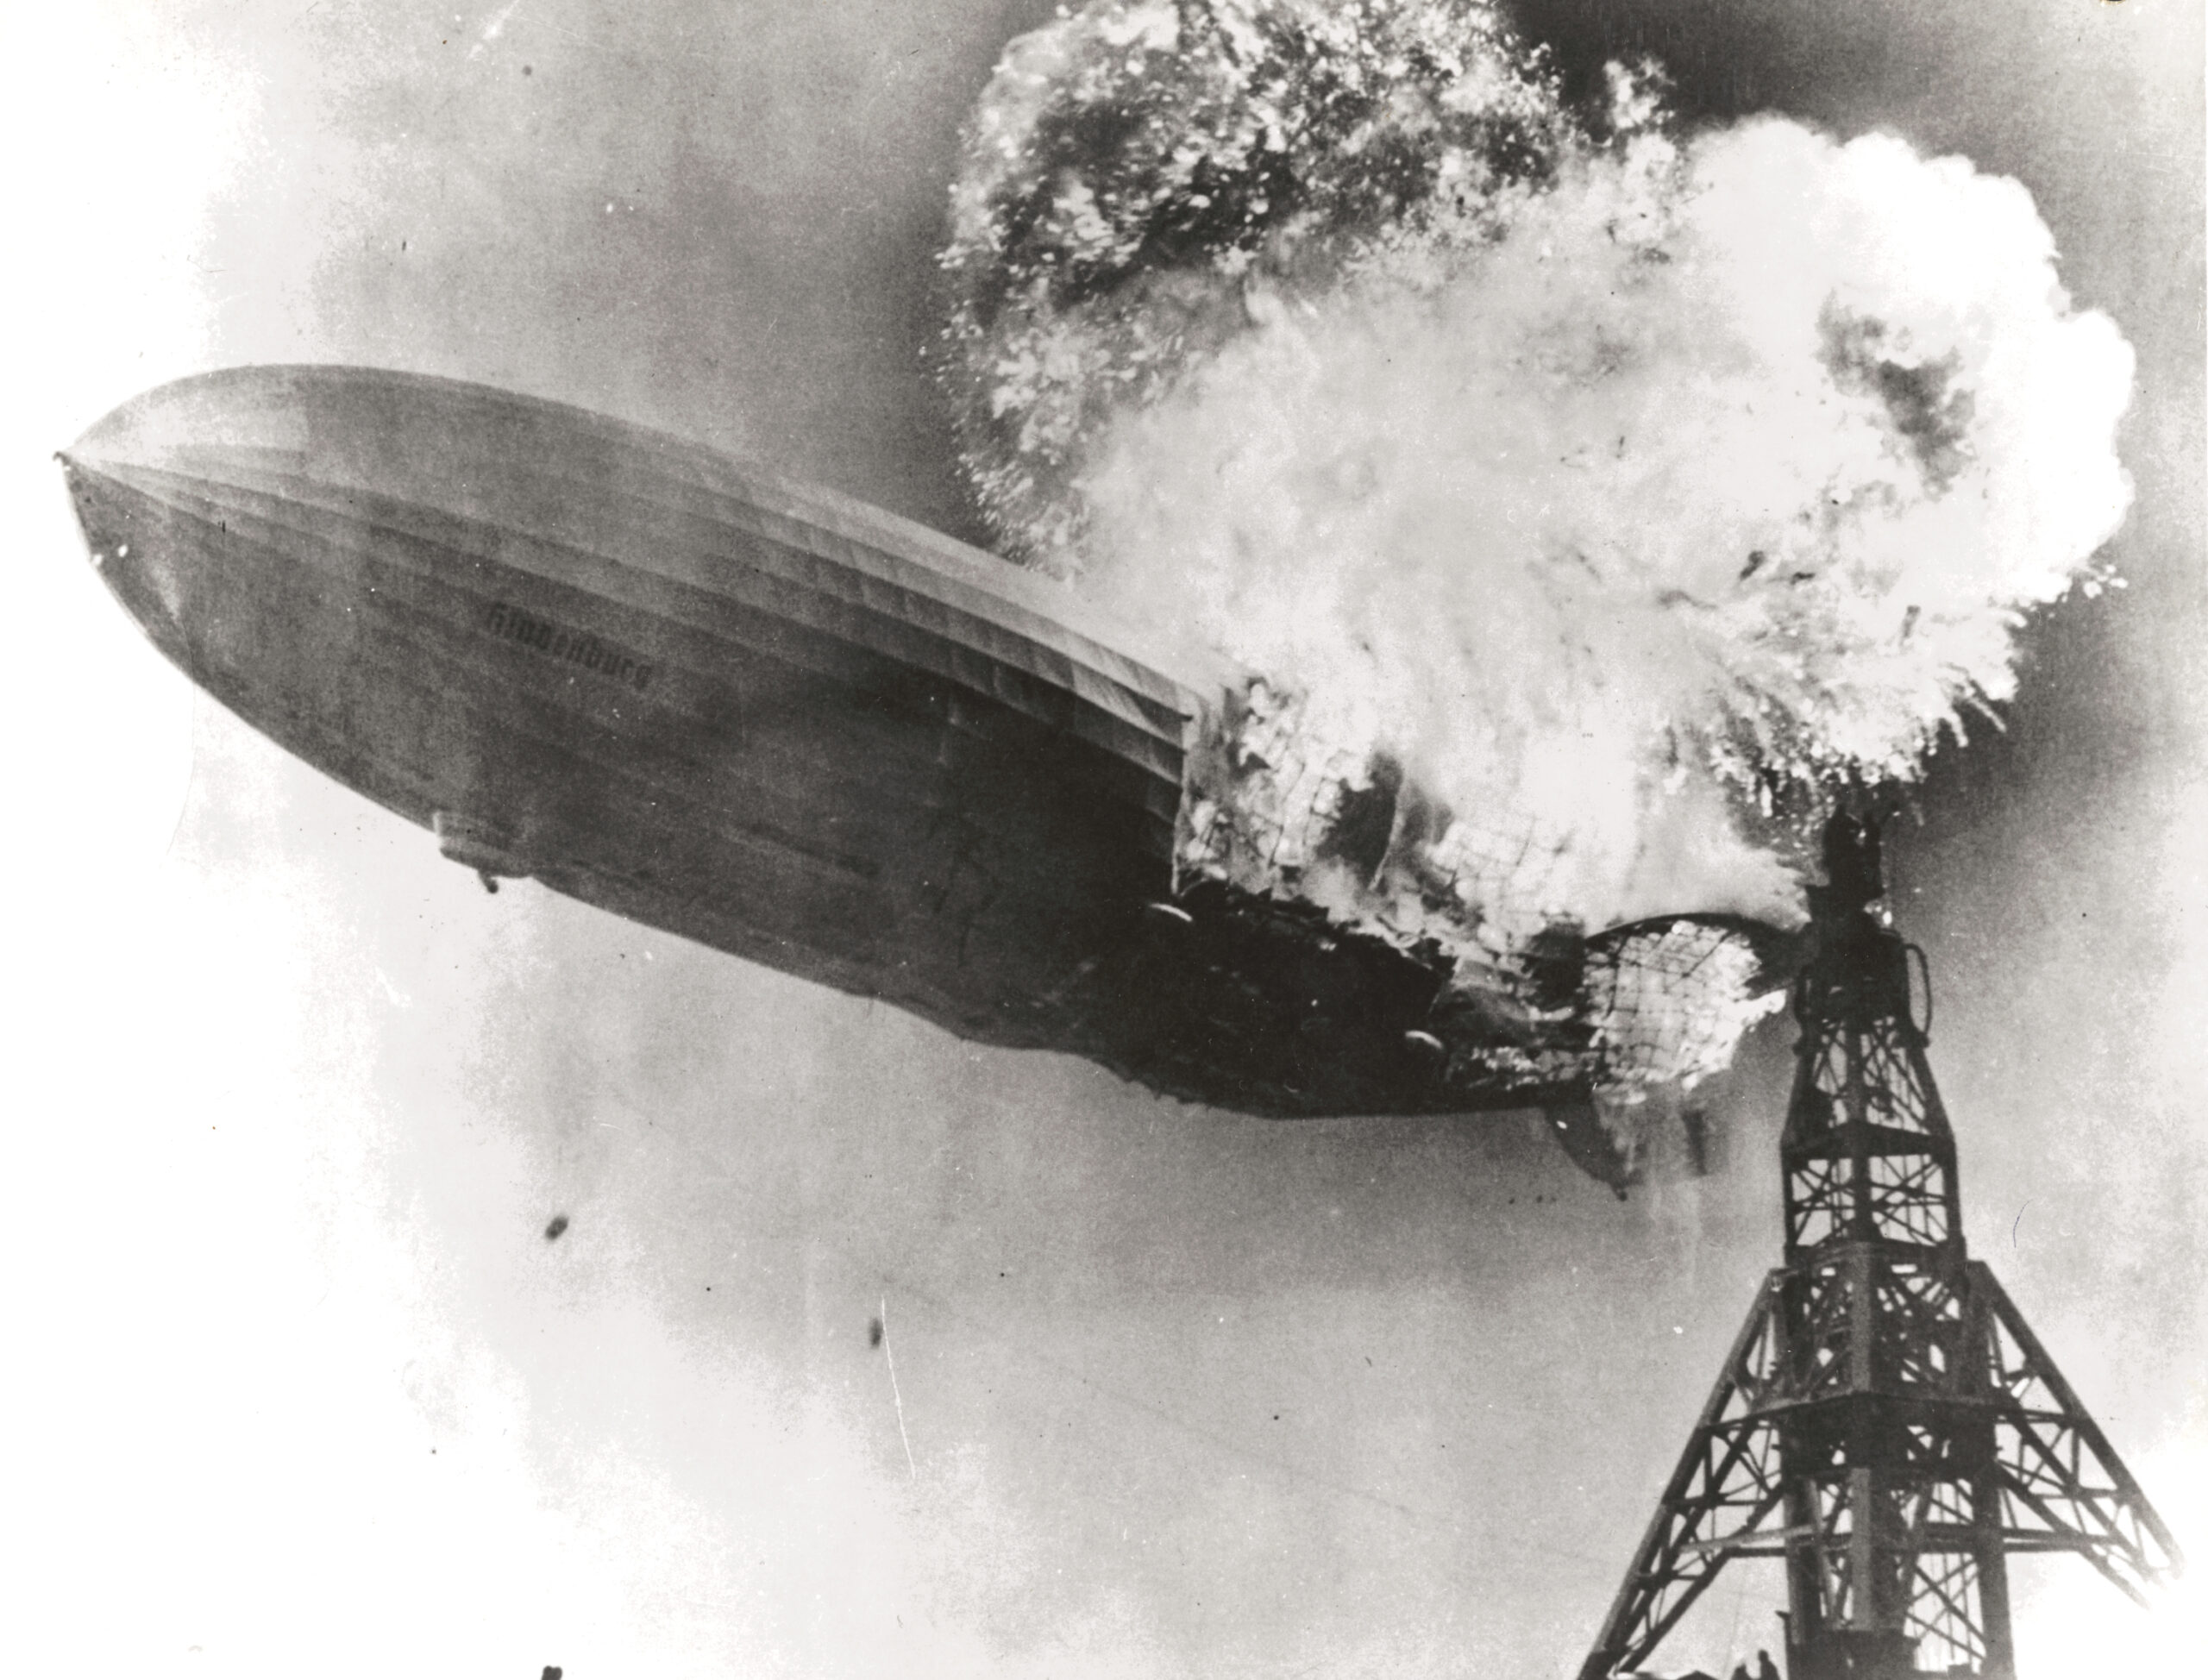 Il diidrogeno è altamente infiammabile all'aria: il disastro del dirigibile Hindenburg, il 6 maggio del 1937 a New York, fu dovuto anche a questa sua caratteristica